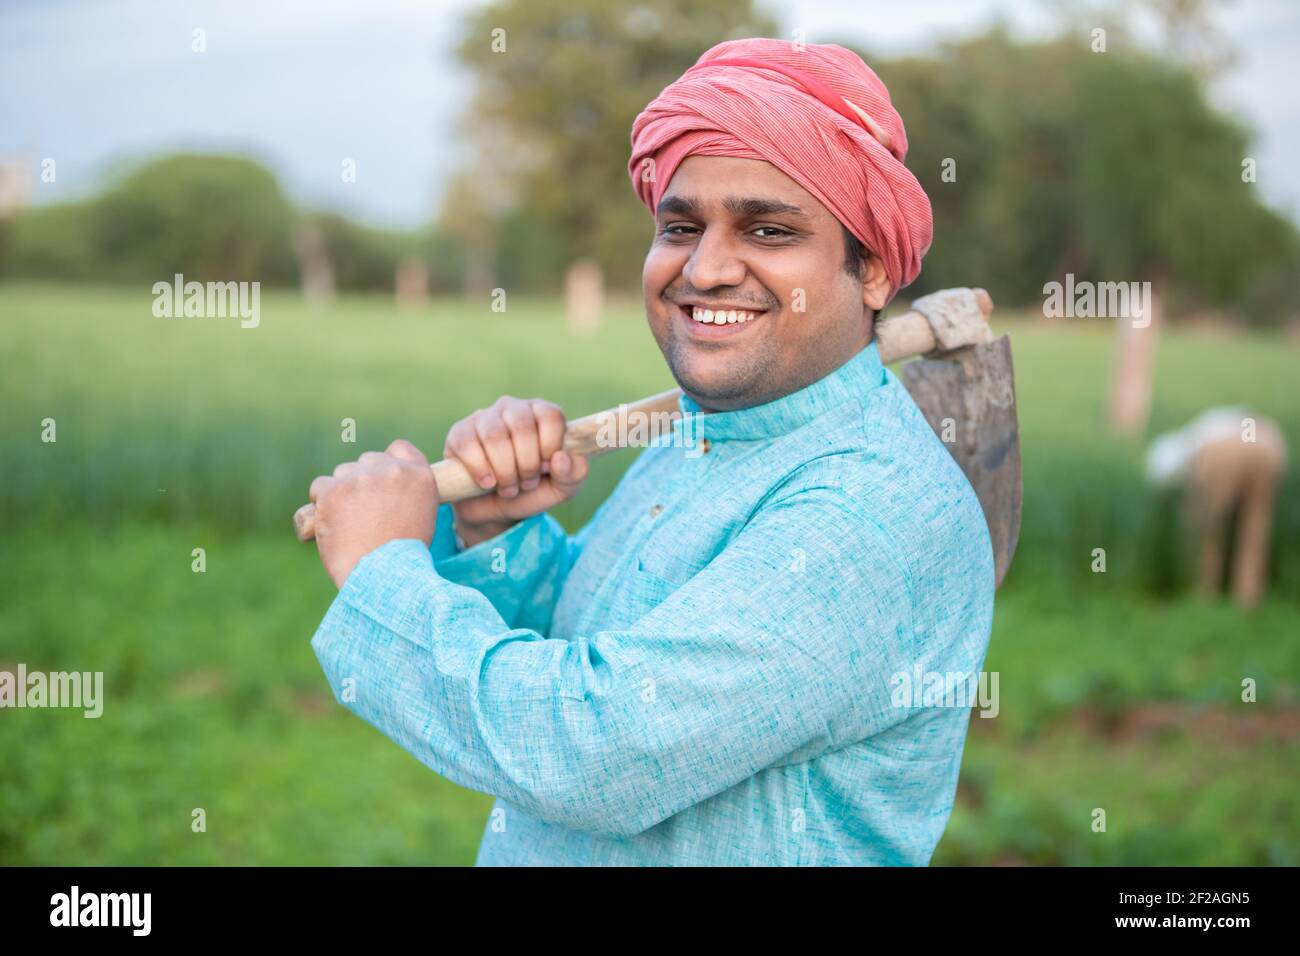 Portrait von glücklichen indischen männlichen Landwirt Arbeiter hält Pfand Garten Spade / Schaufel oder landwirtschaftliche Werkzeug. Stockfoto